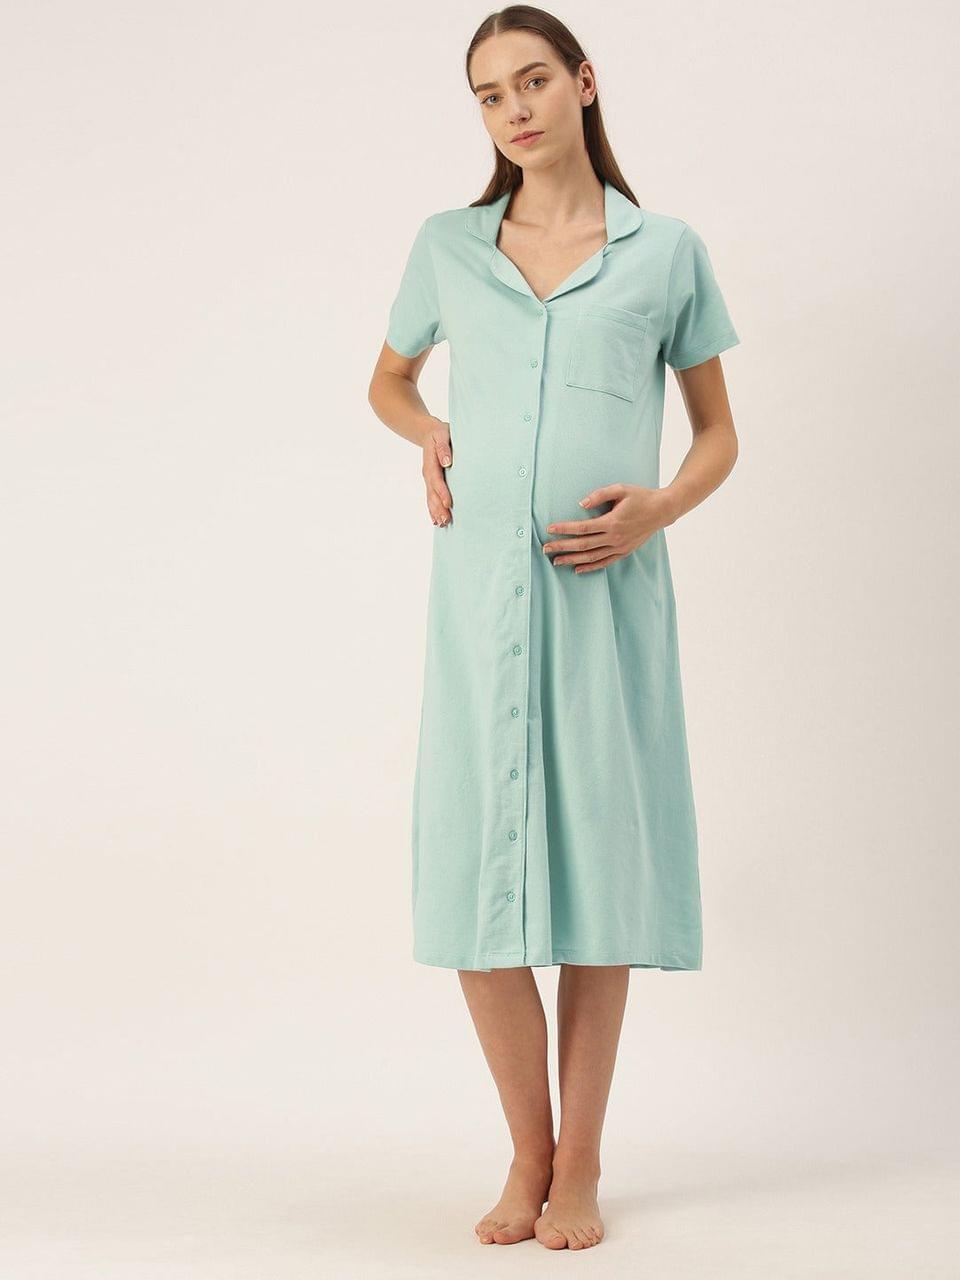 Nejo Feeding/Nursing Maternity Hospital Dress